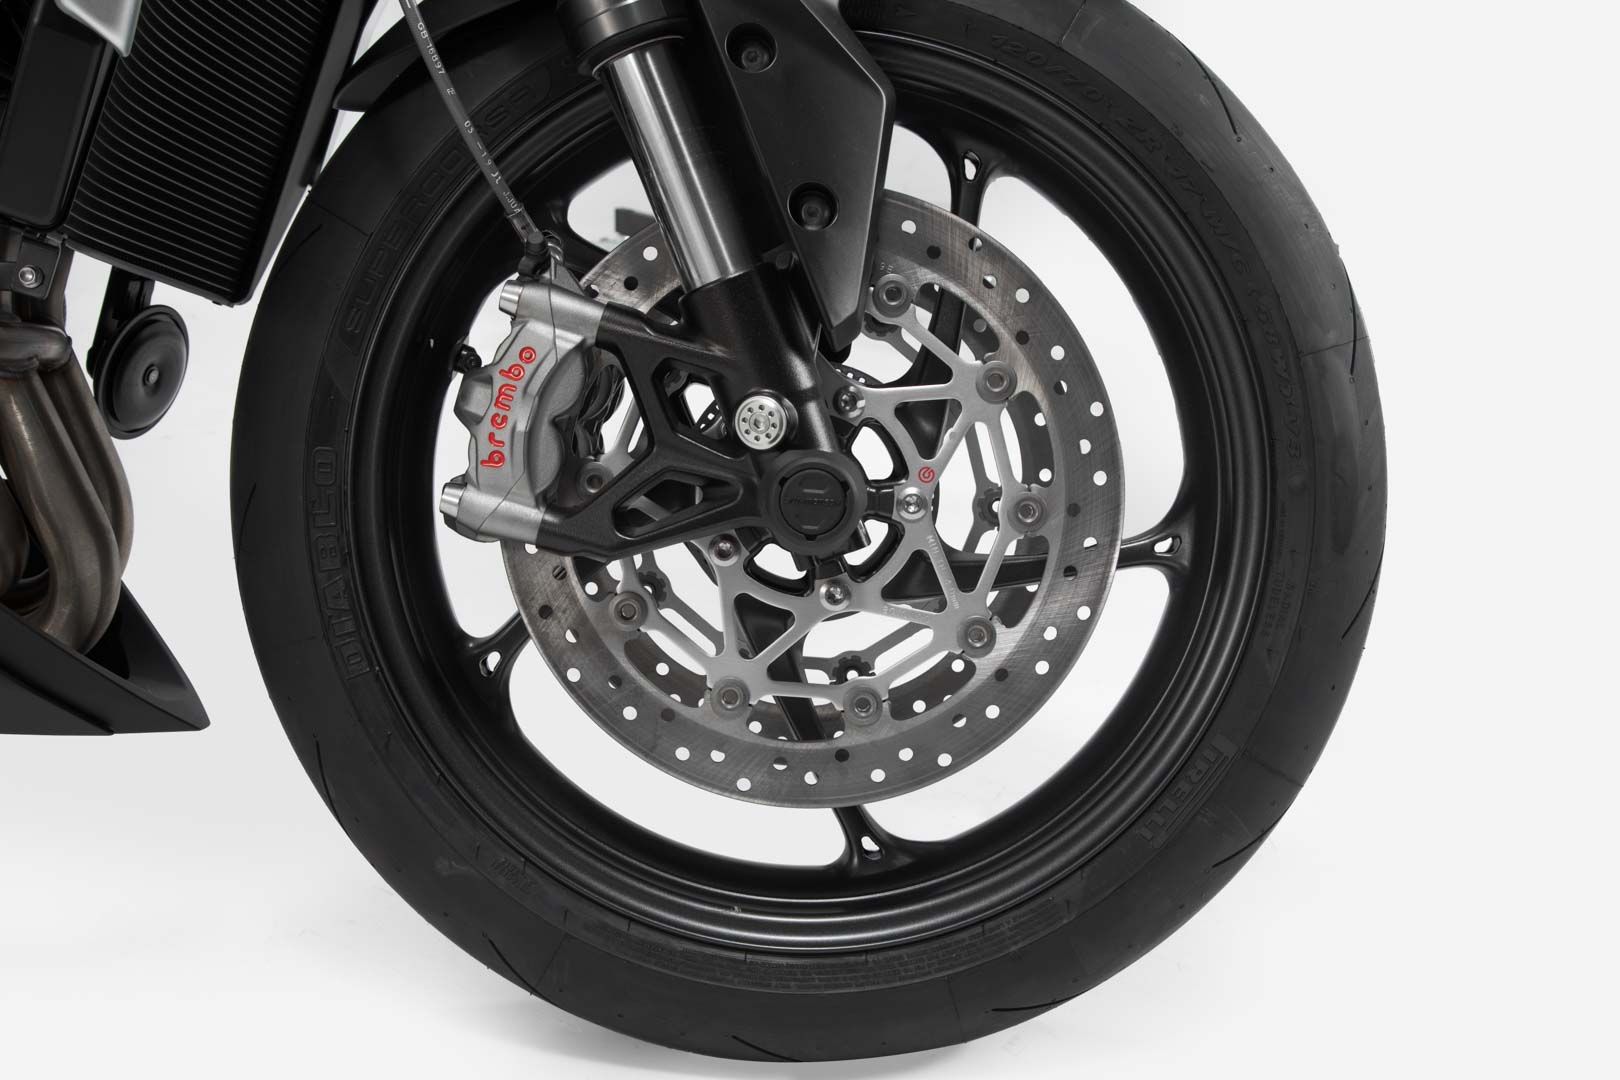 Slider set for front axle Black Ducati Modelle